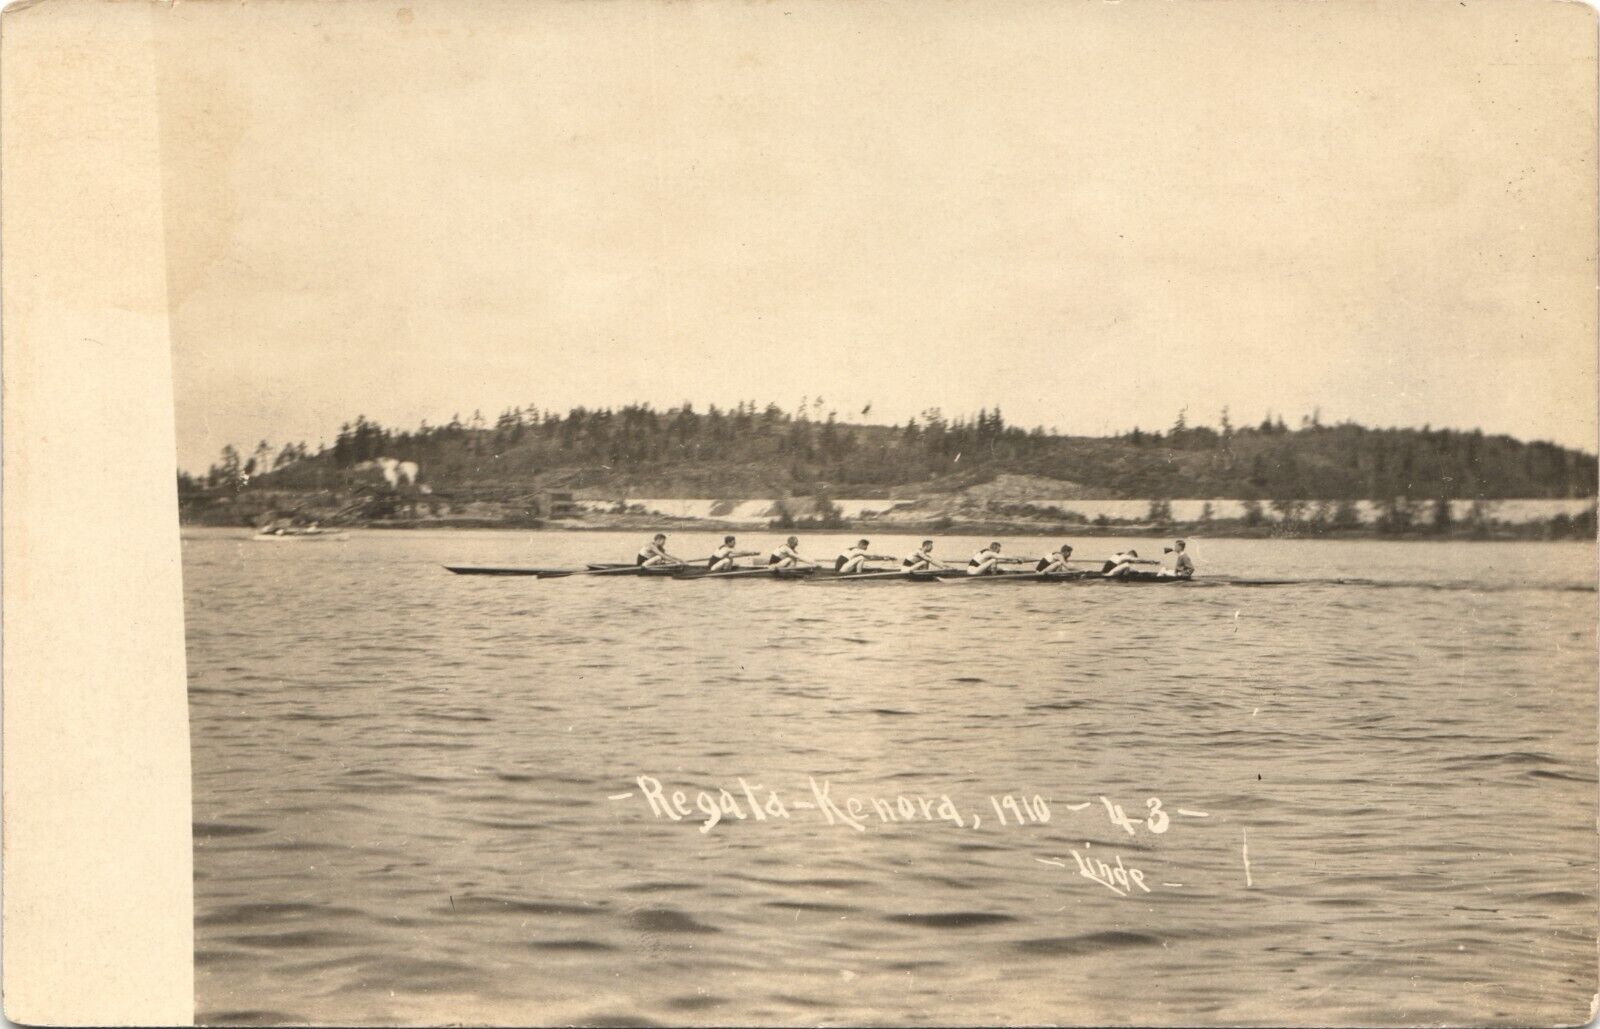 REGATTA original real photo postcard rppc KENORA ONTARIO CANADA 1910 rowing boat